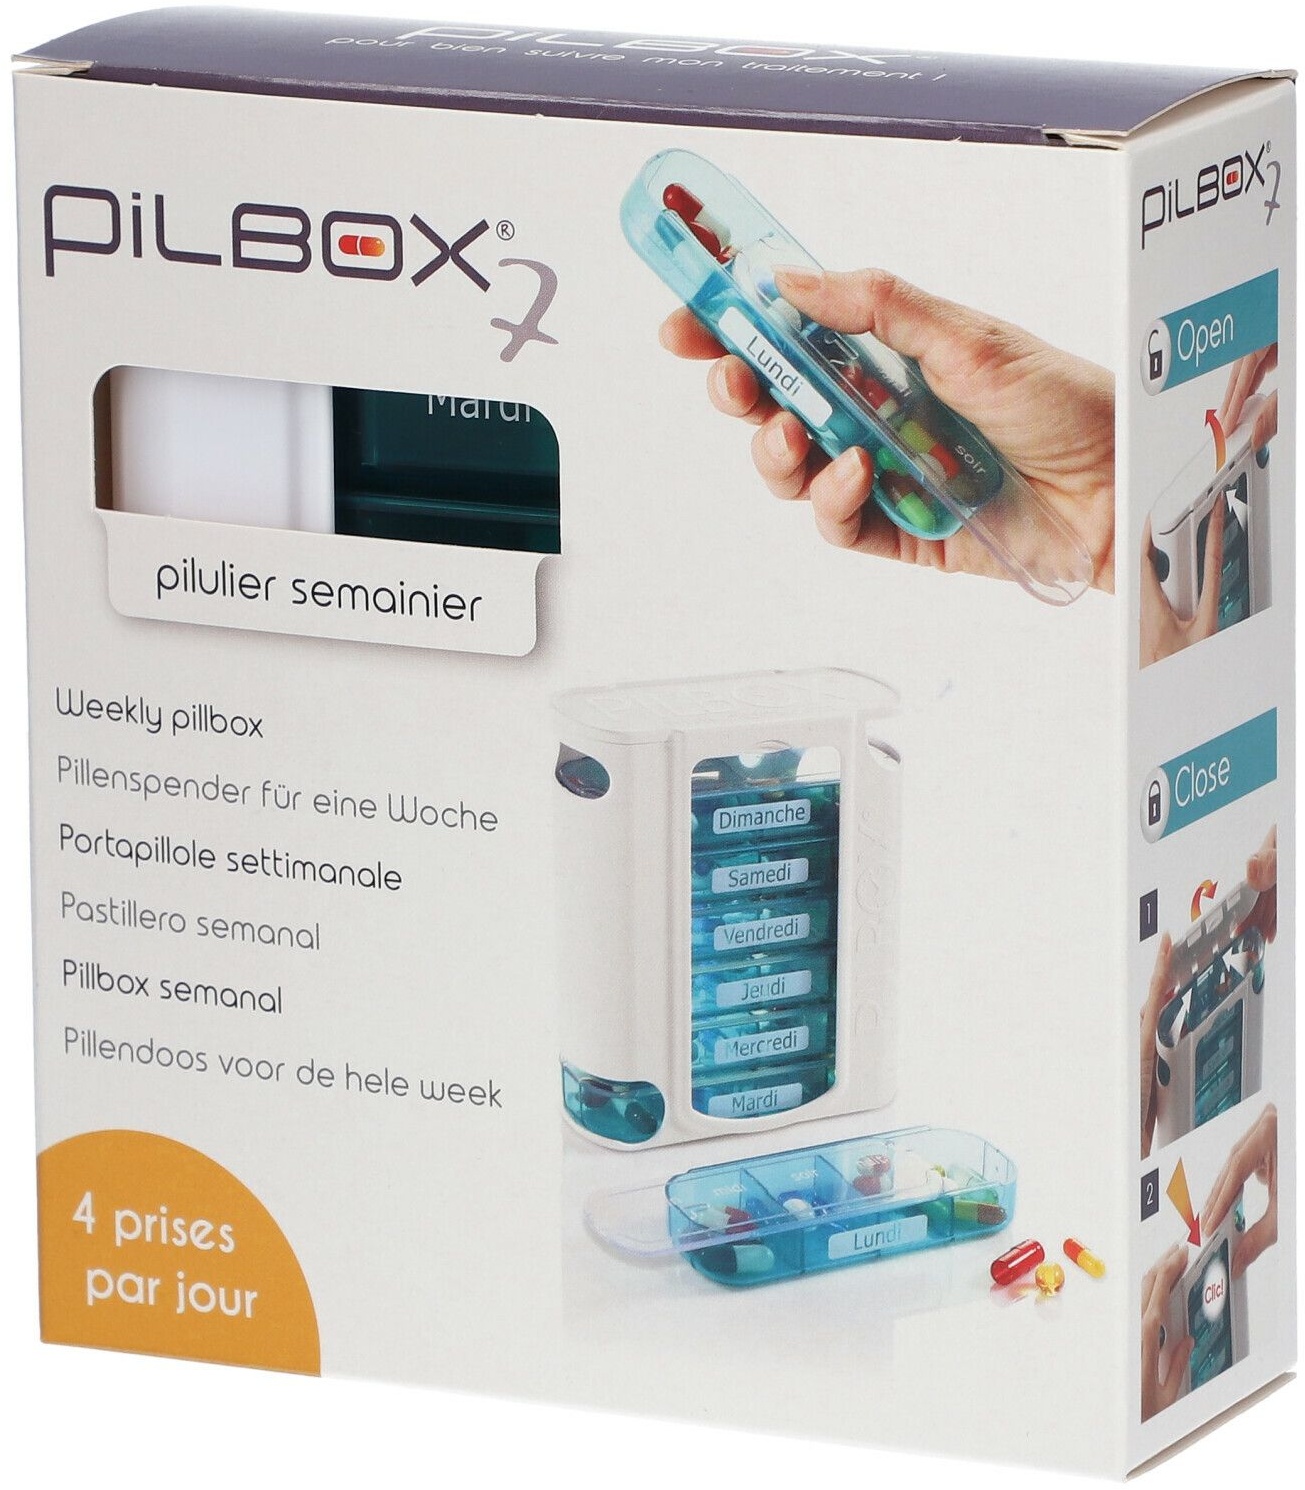 Gilbert Pilbox 7 Midi 1 pc(s) Séparateur de tablettes